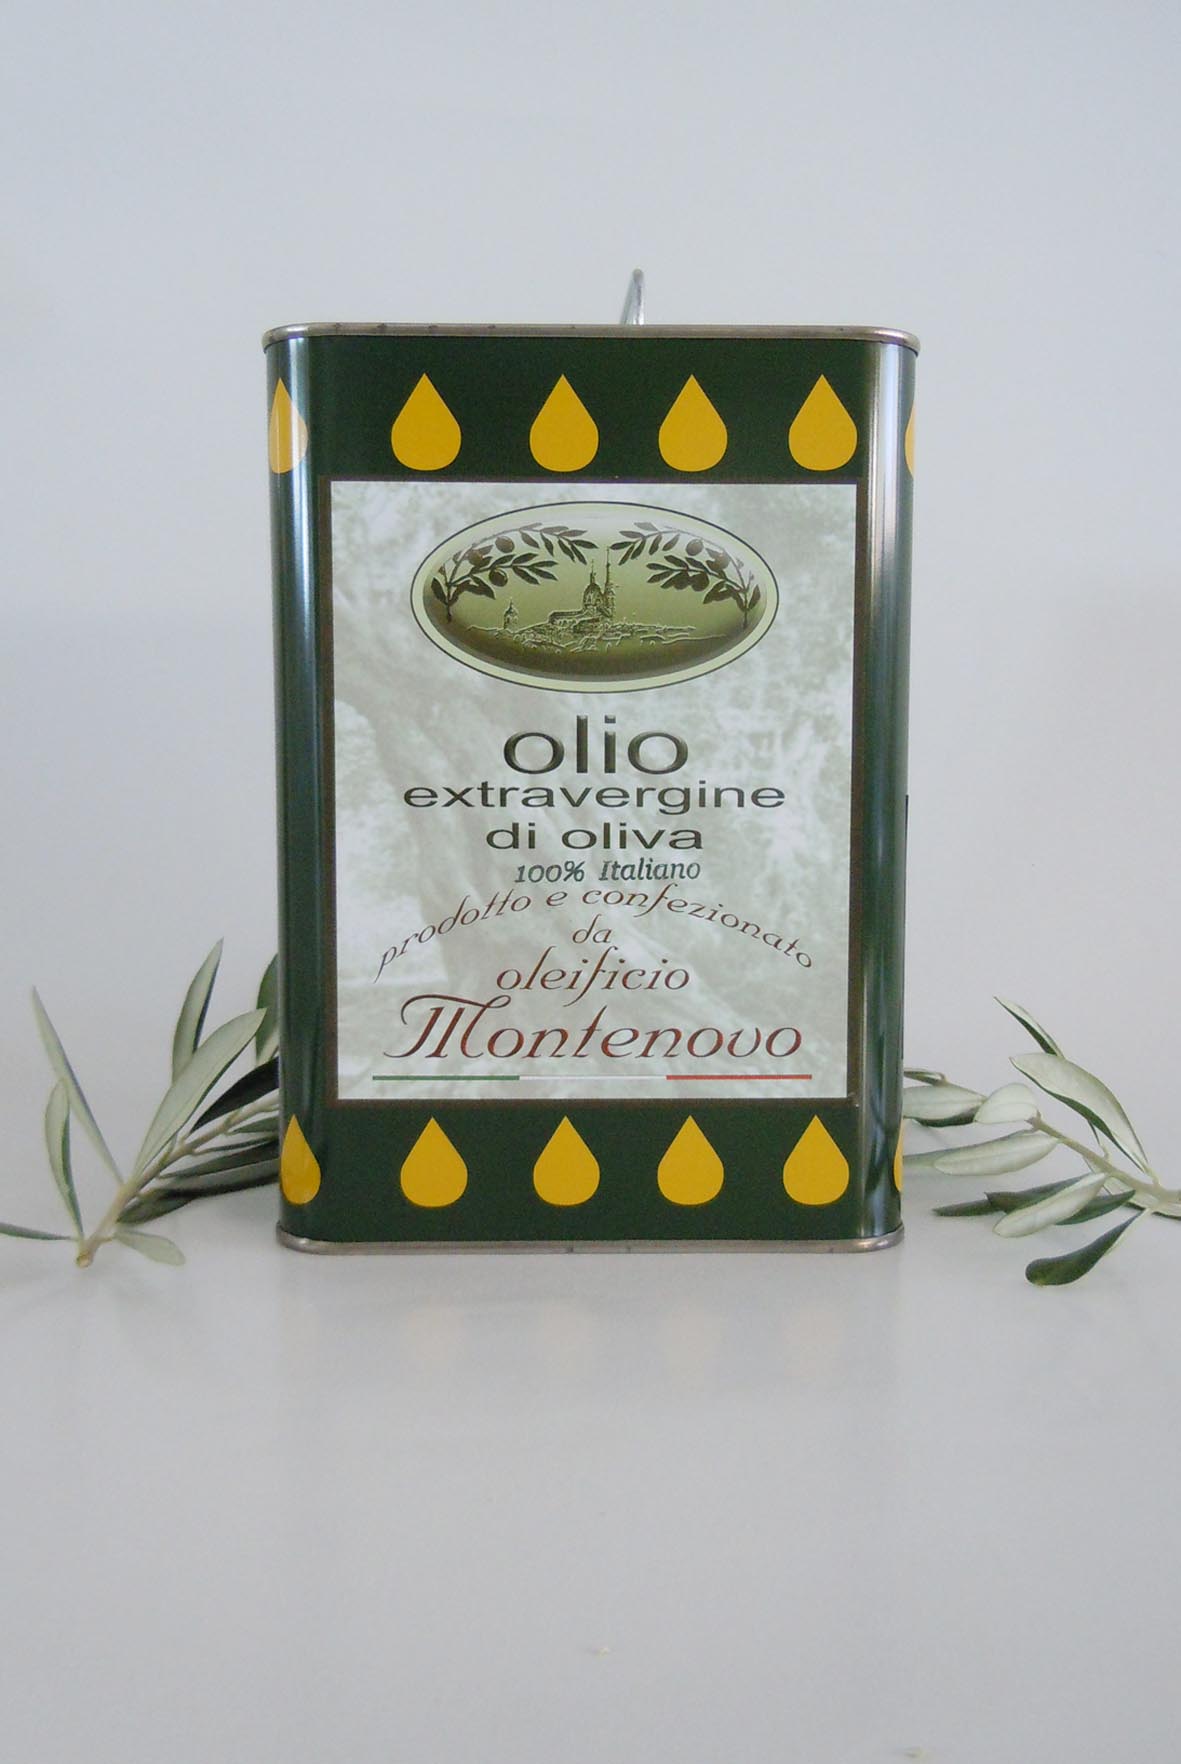 lattina olio extravergine di oliva "Montenovo" 3 LITRI